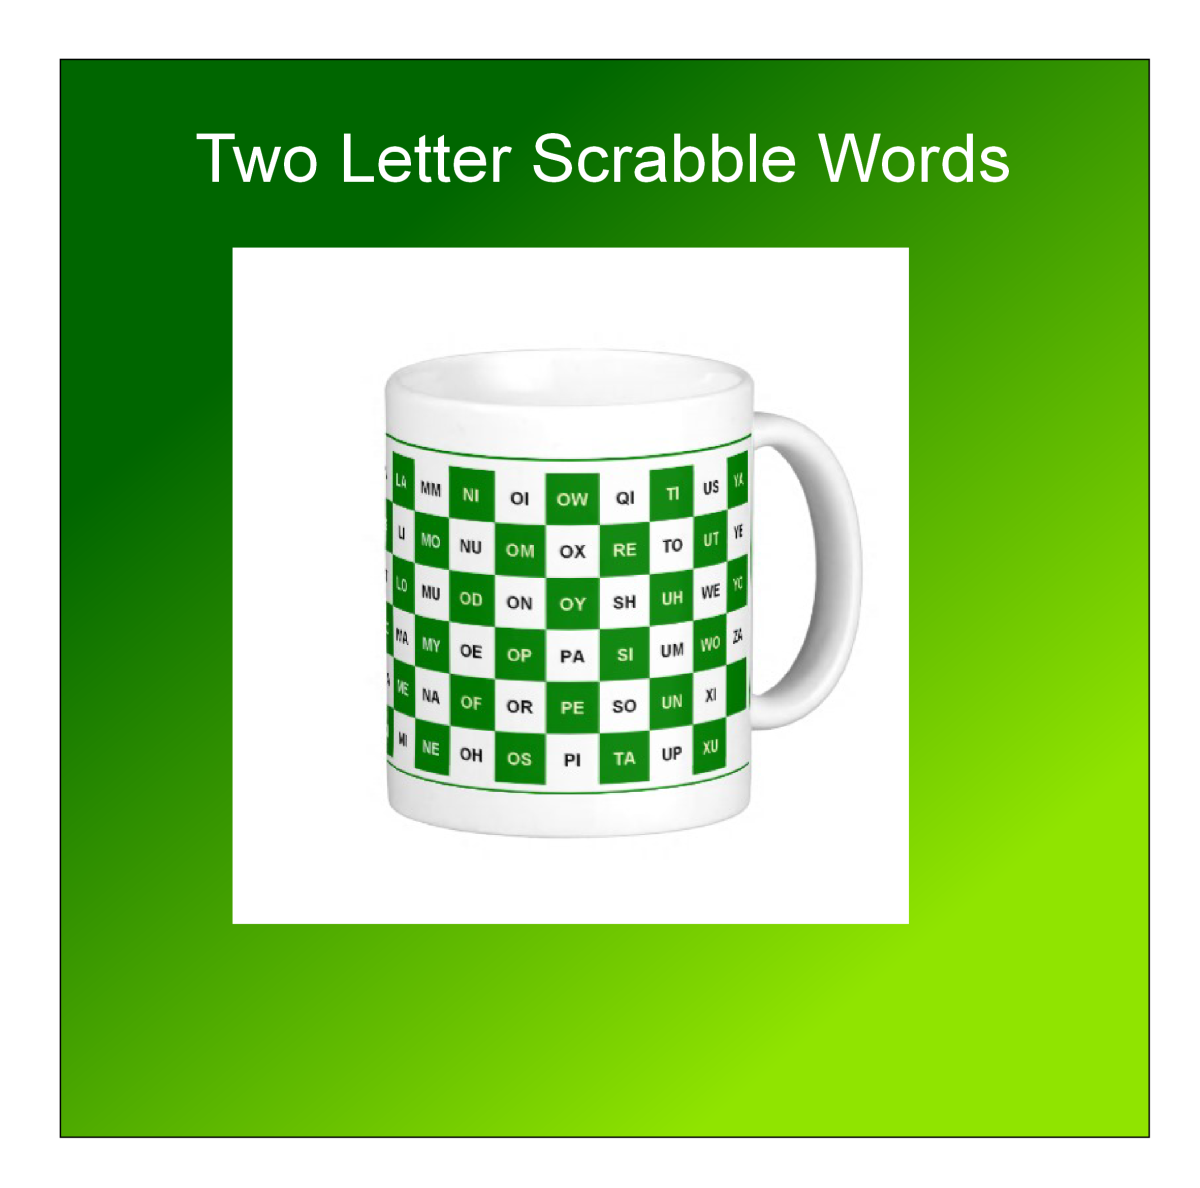 Scrabble mug